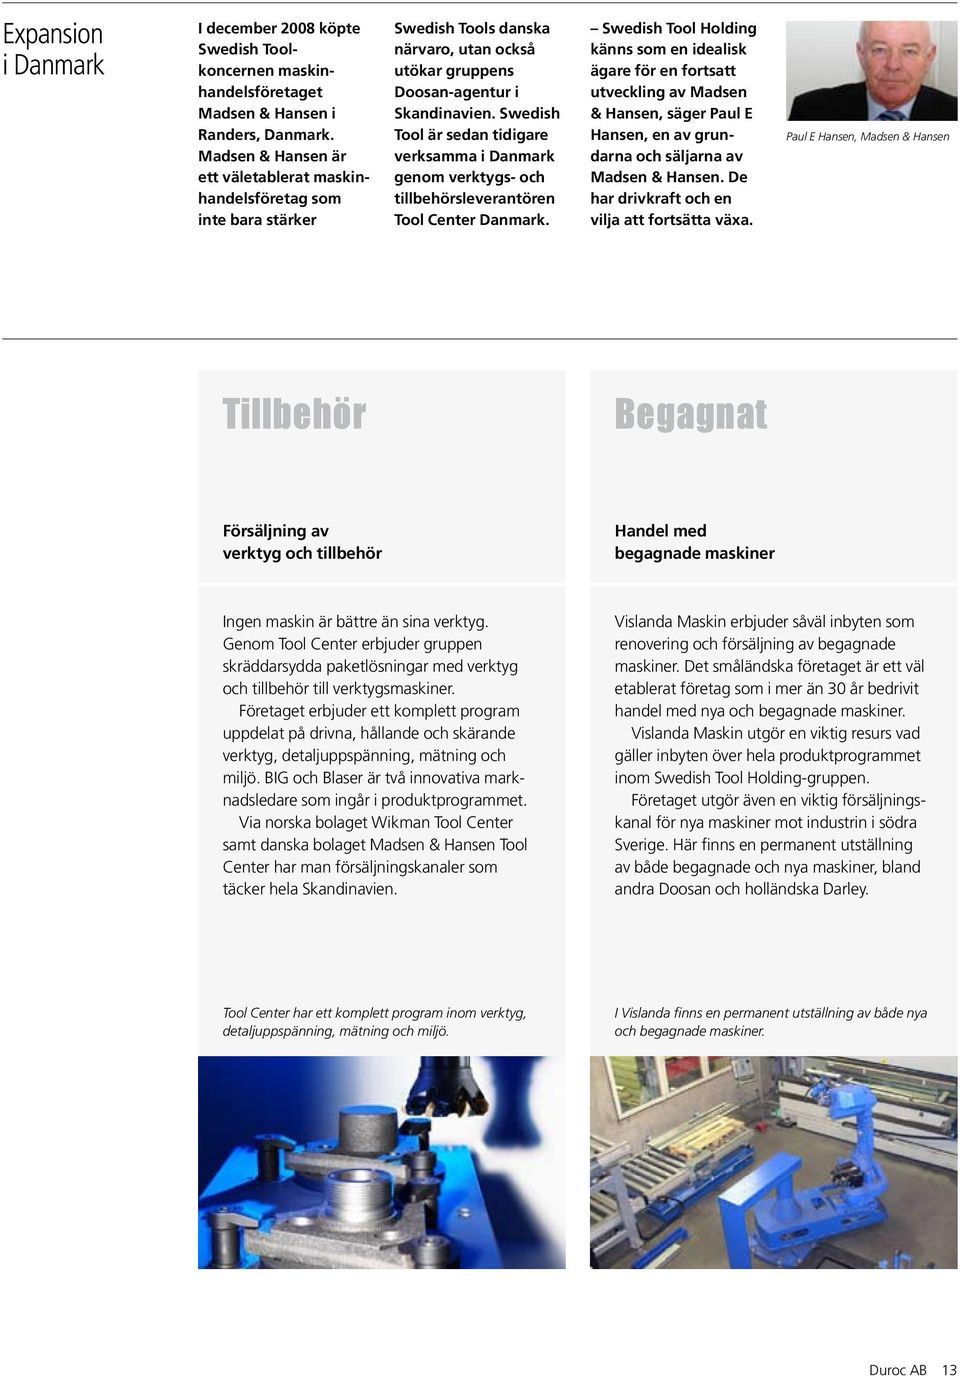 Swedish Tool är sedan tidigare verksamma i Danmark genom verktygs- och tillbehörsleverantören Tool Center Danmark.